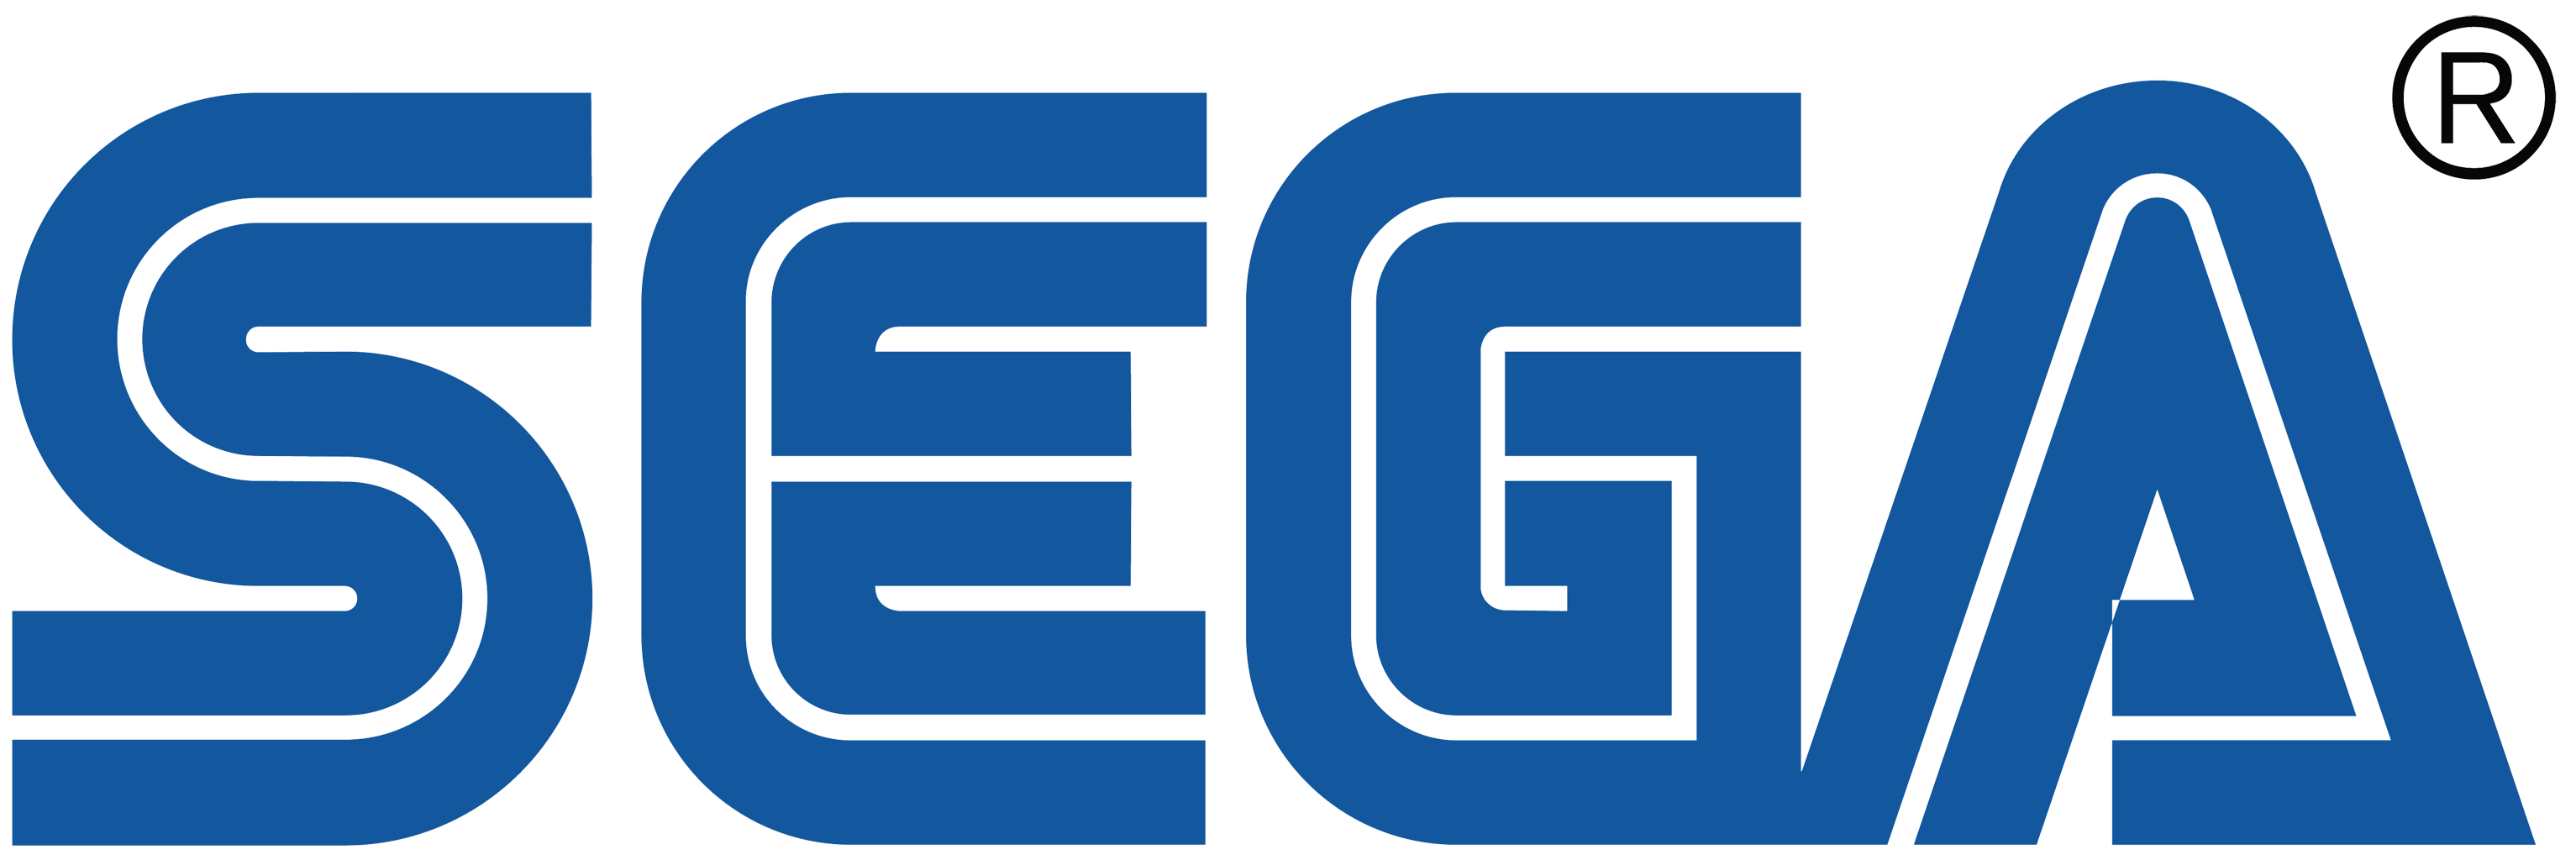 Sega, Sega Wiki